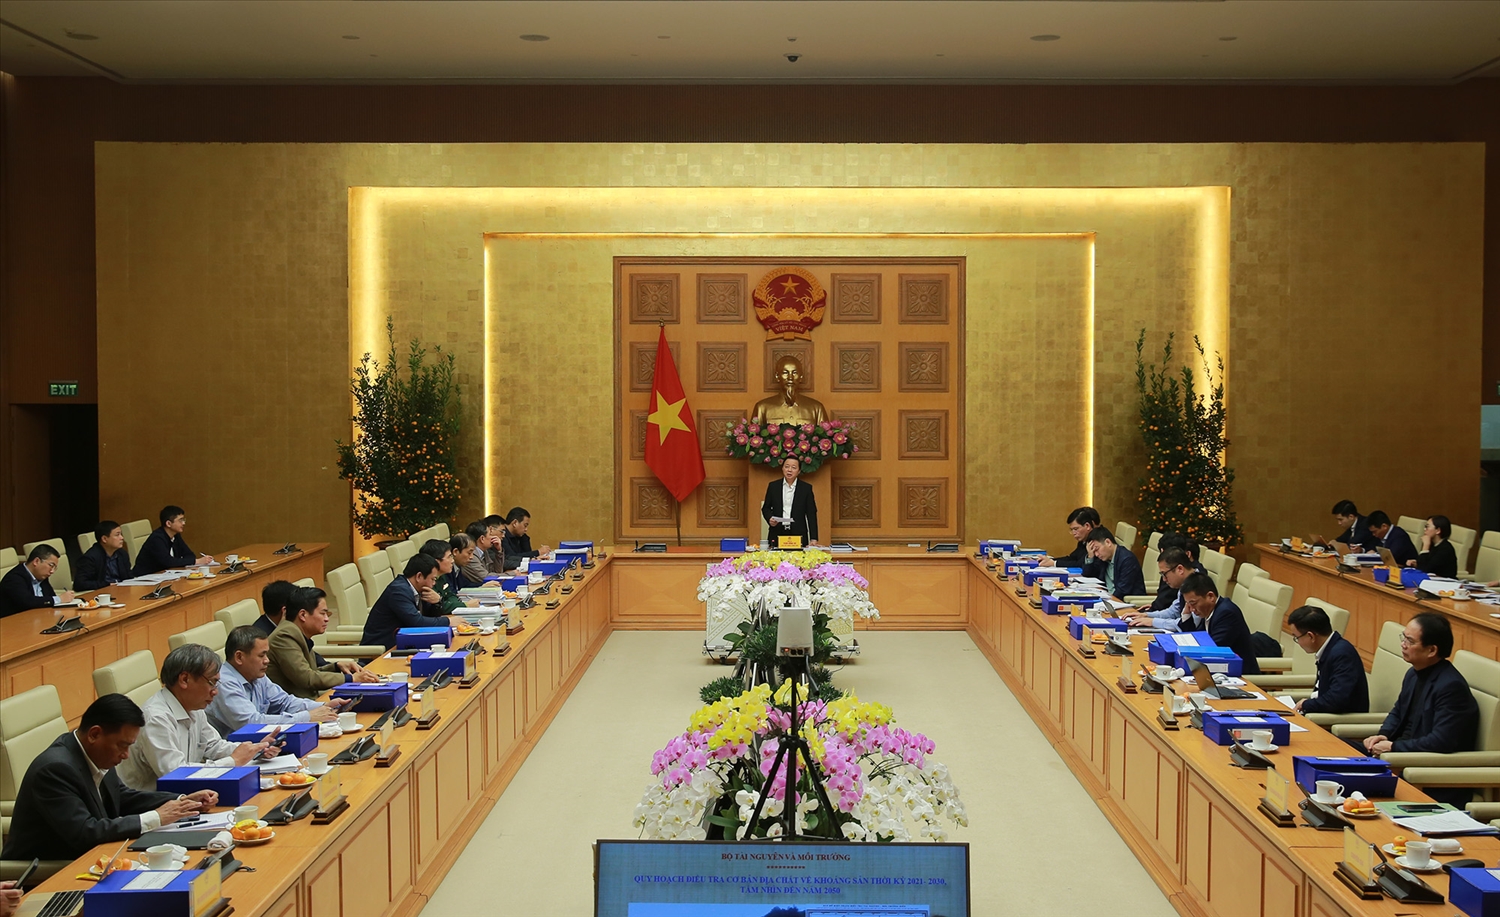 Phó Thủ tướng yêu cầu cơ quan chủ trì xây dựng Quy hoạch tiếp thu, giải trình đầy đủ trước khi trình Thủ tướng Chính phủ phê duyệt - Ảnh: VGP/Minh Khôi